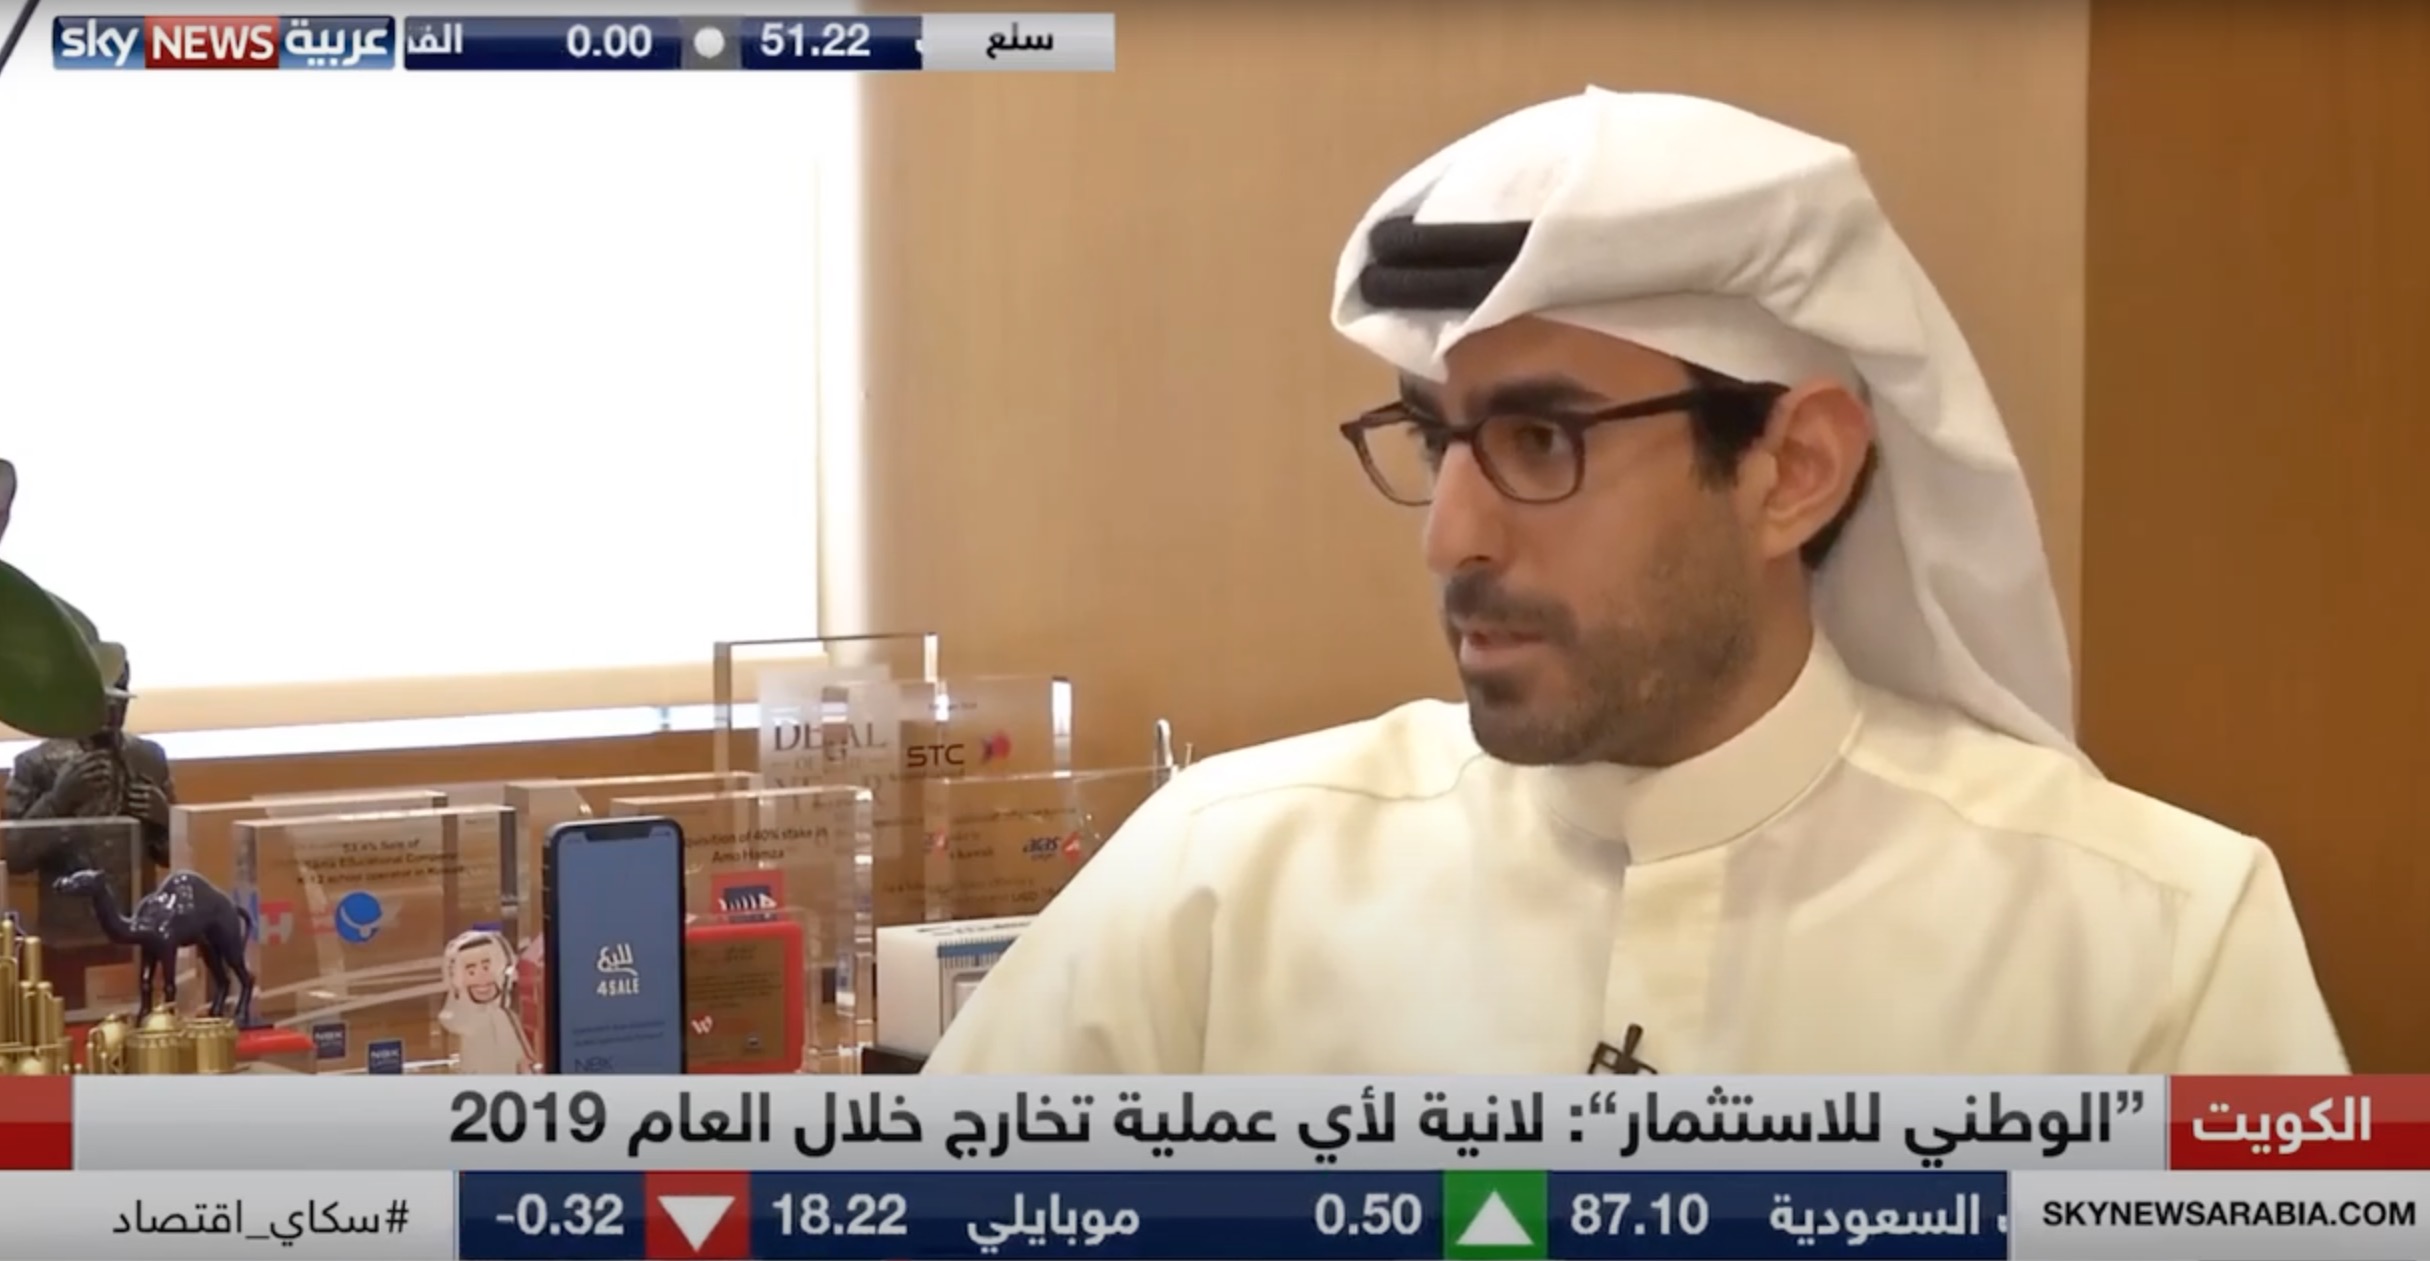 مقابلة الرئيس التنفيذي لشركة الوطني للاستثمار فيصل عبداللطيف الحمد على قناة سكاي نيوز - عربية